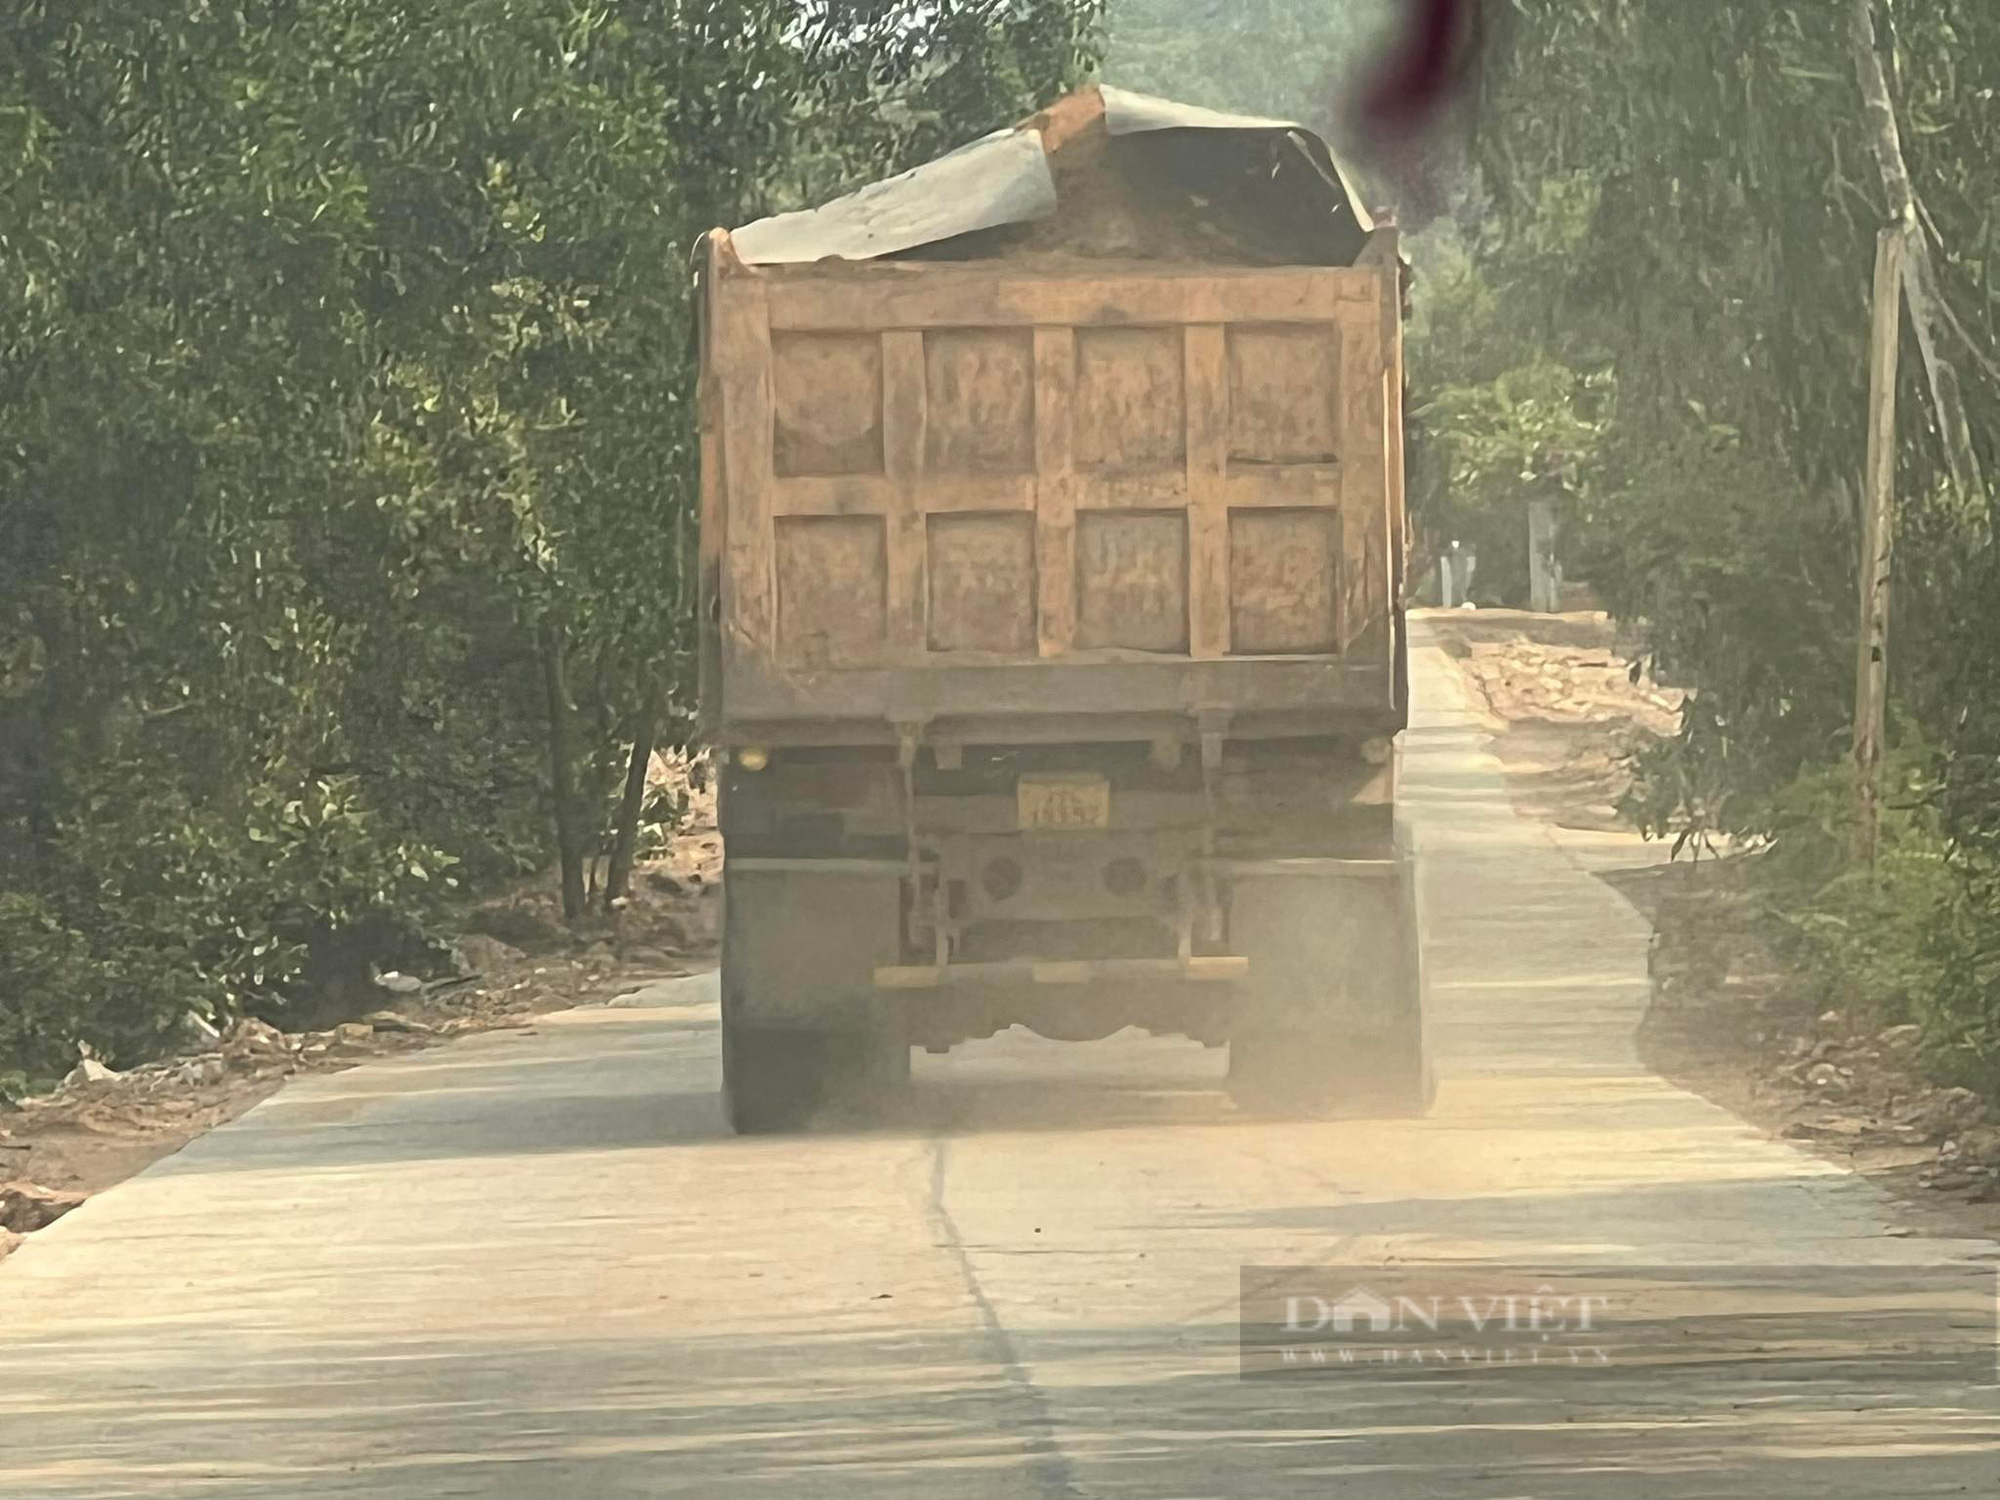 Cậnh cảnh đoàn xe 'siêu tải' cày xéo trên đường khiến người dân Bình Định bất an - Ảnh 1.